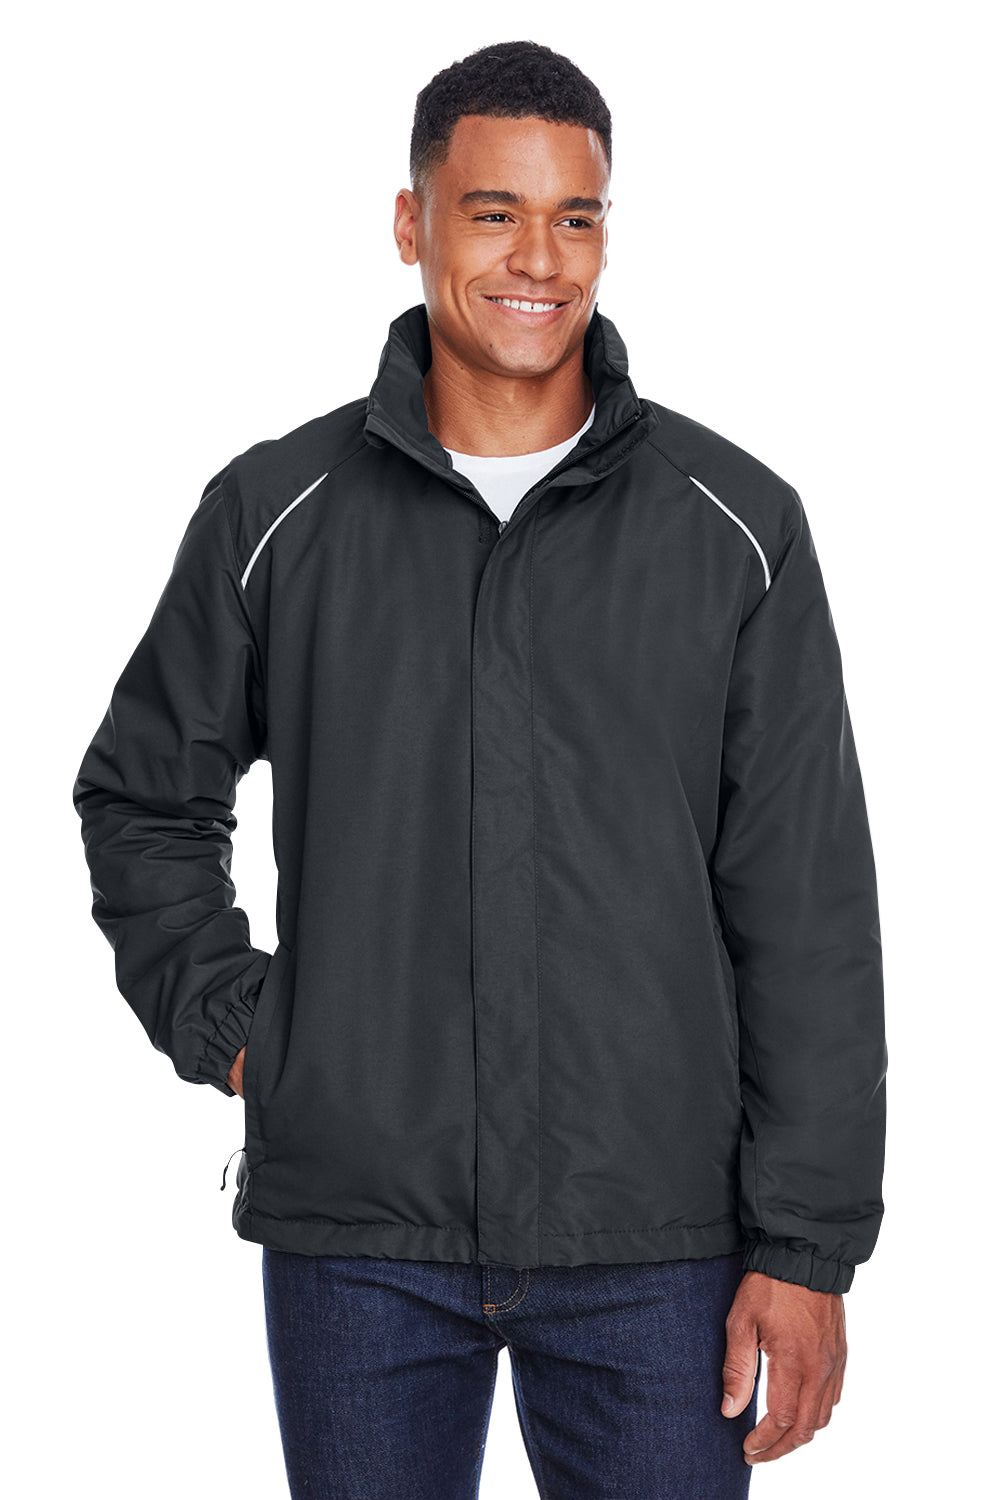 Core 365 Mens Profile Water Resistant Full Zip Hooded Jacket 88224 ...